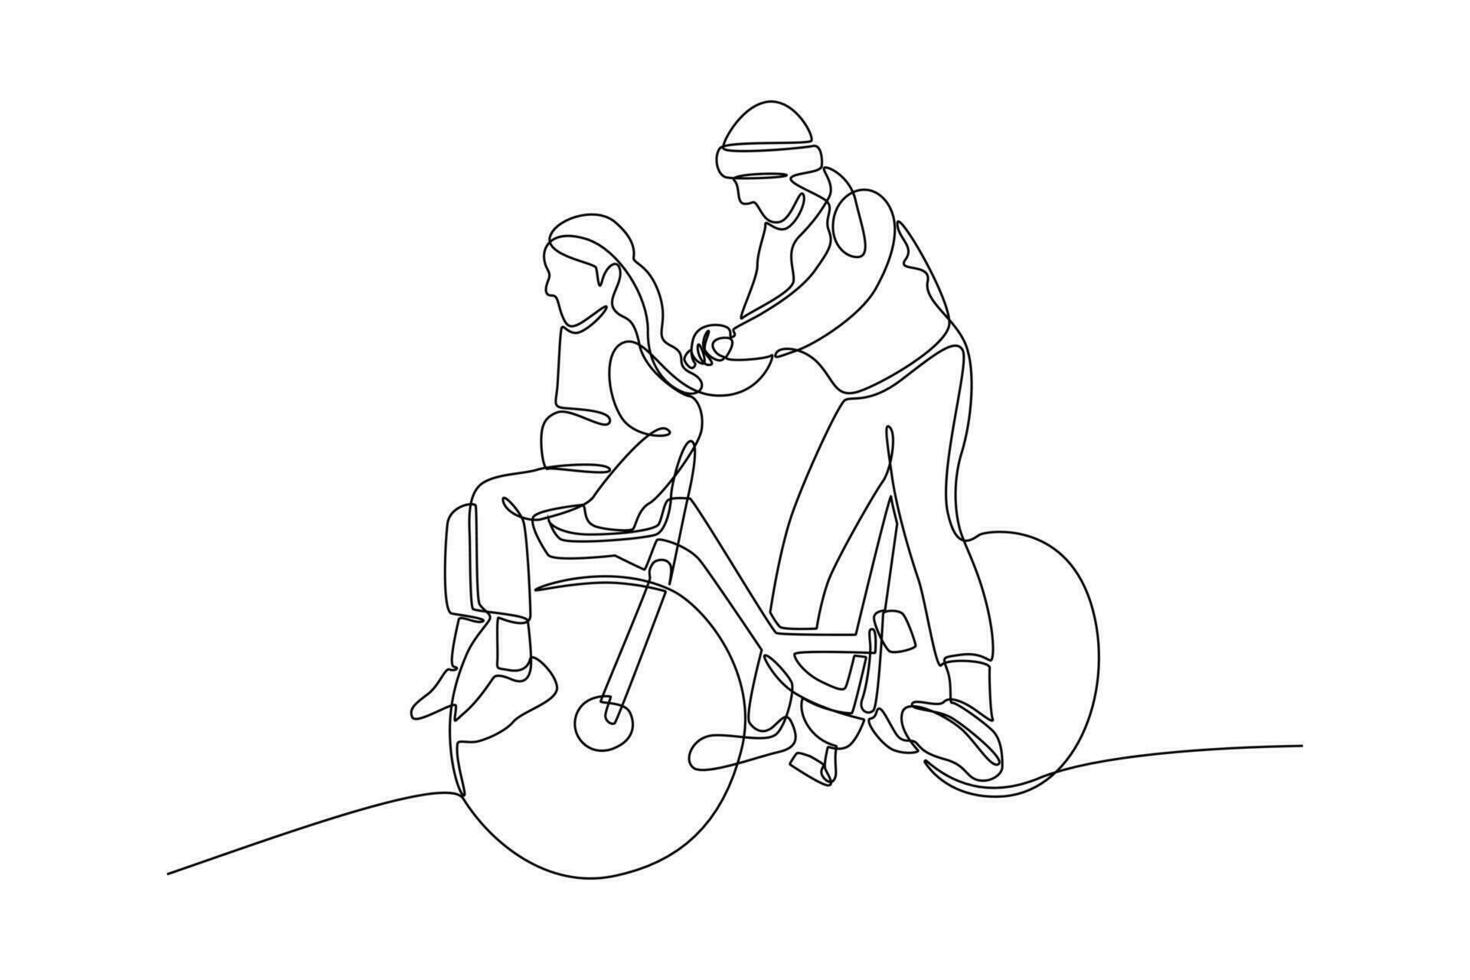 continuo uno linea disegno contento genitori con sua bambino equitazione bicicletta insieme. vettore illustrazione.